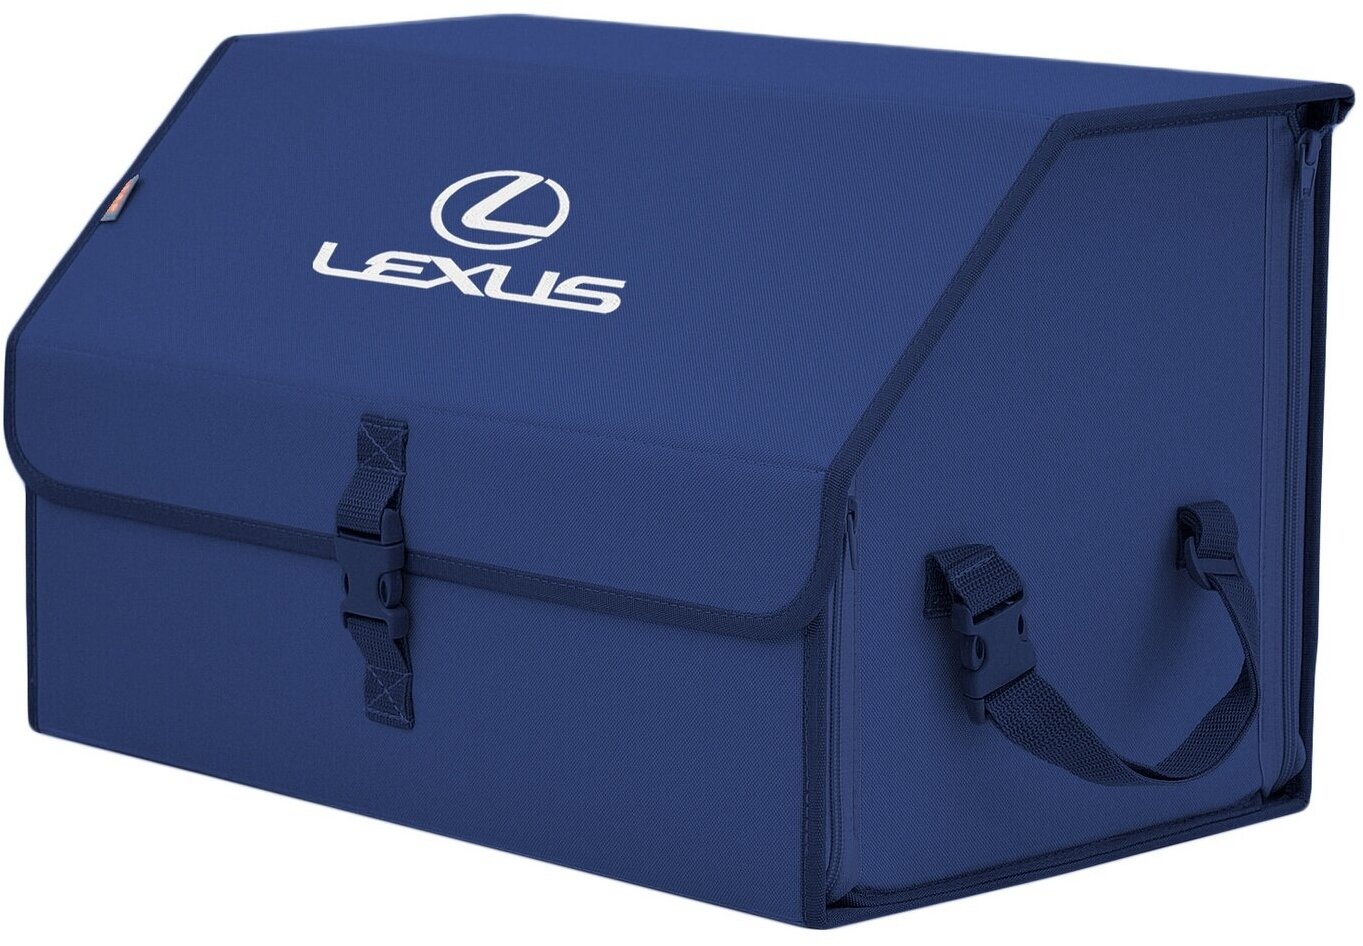 Органайзер-саквояж в багажник "Союз" (размер L). Цвет: синий с вышивкой Lexus (Лексус).